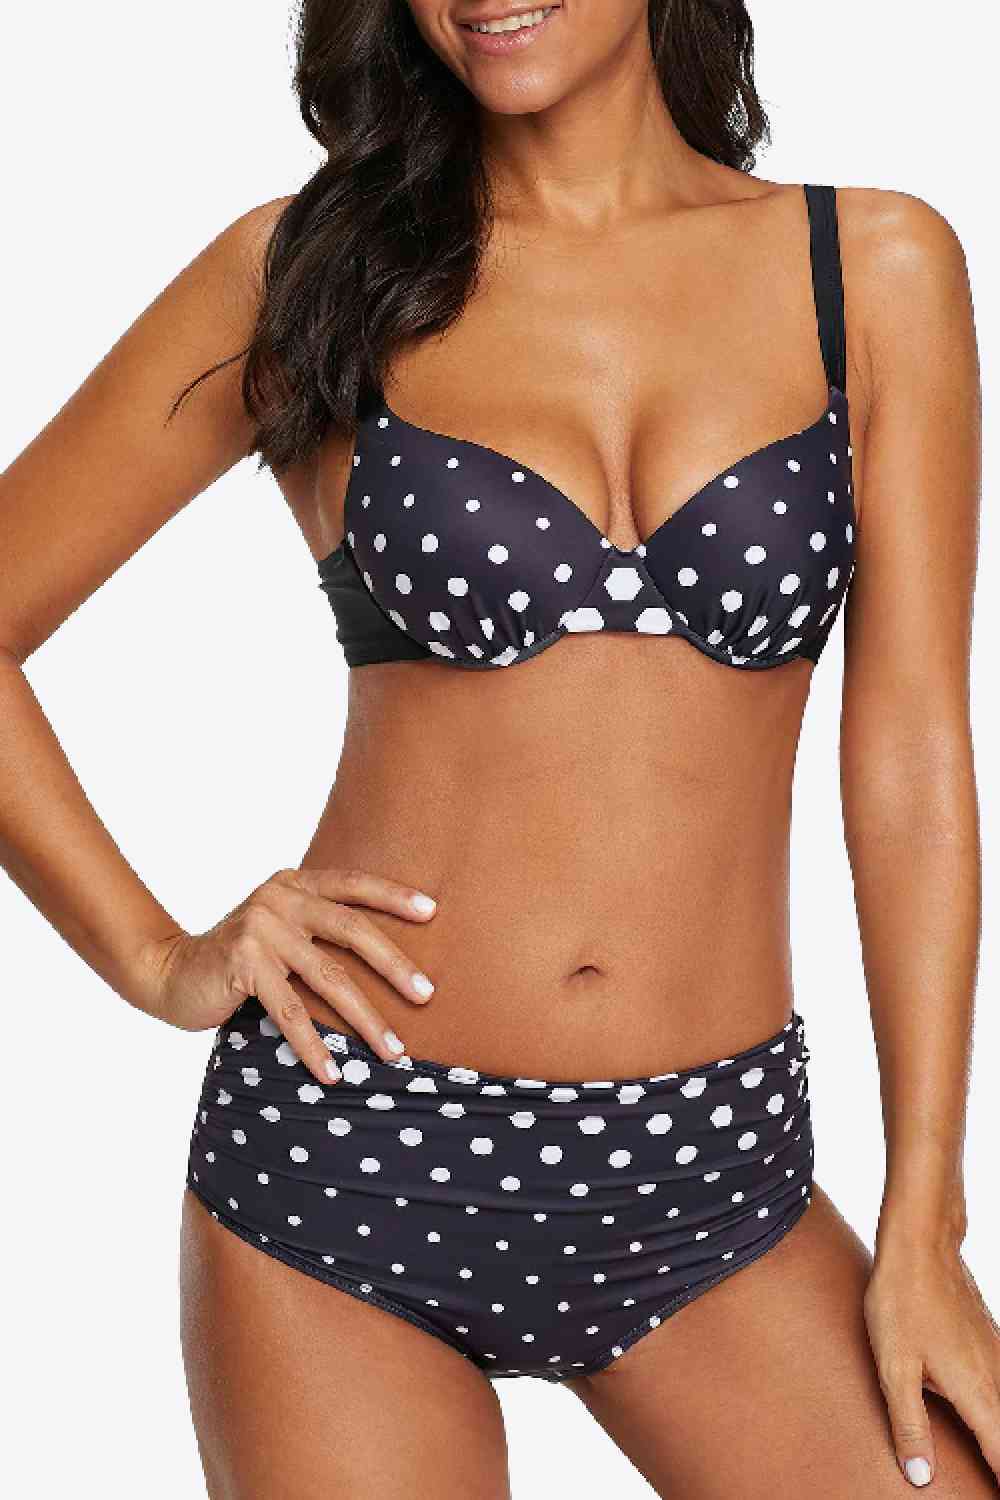 High Waist Polka Dot Bikini in Size M, L, XL, or 2XL Black Polka Dot